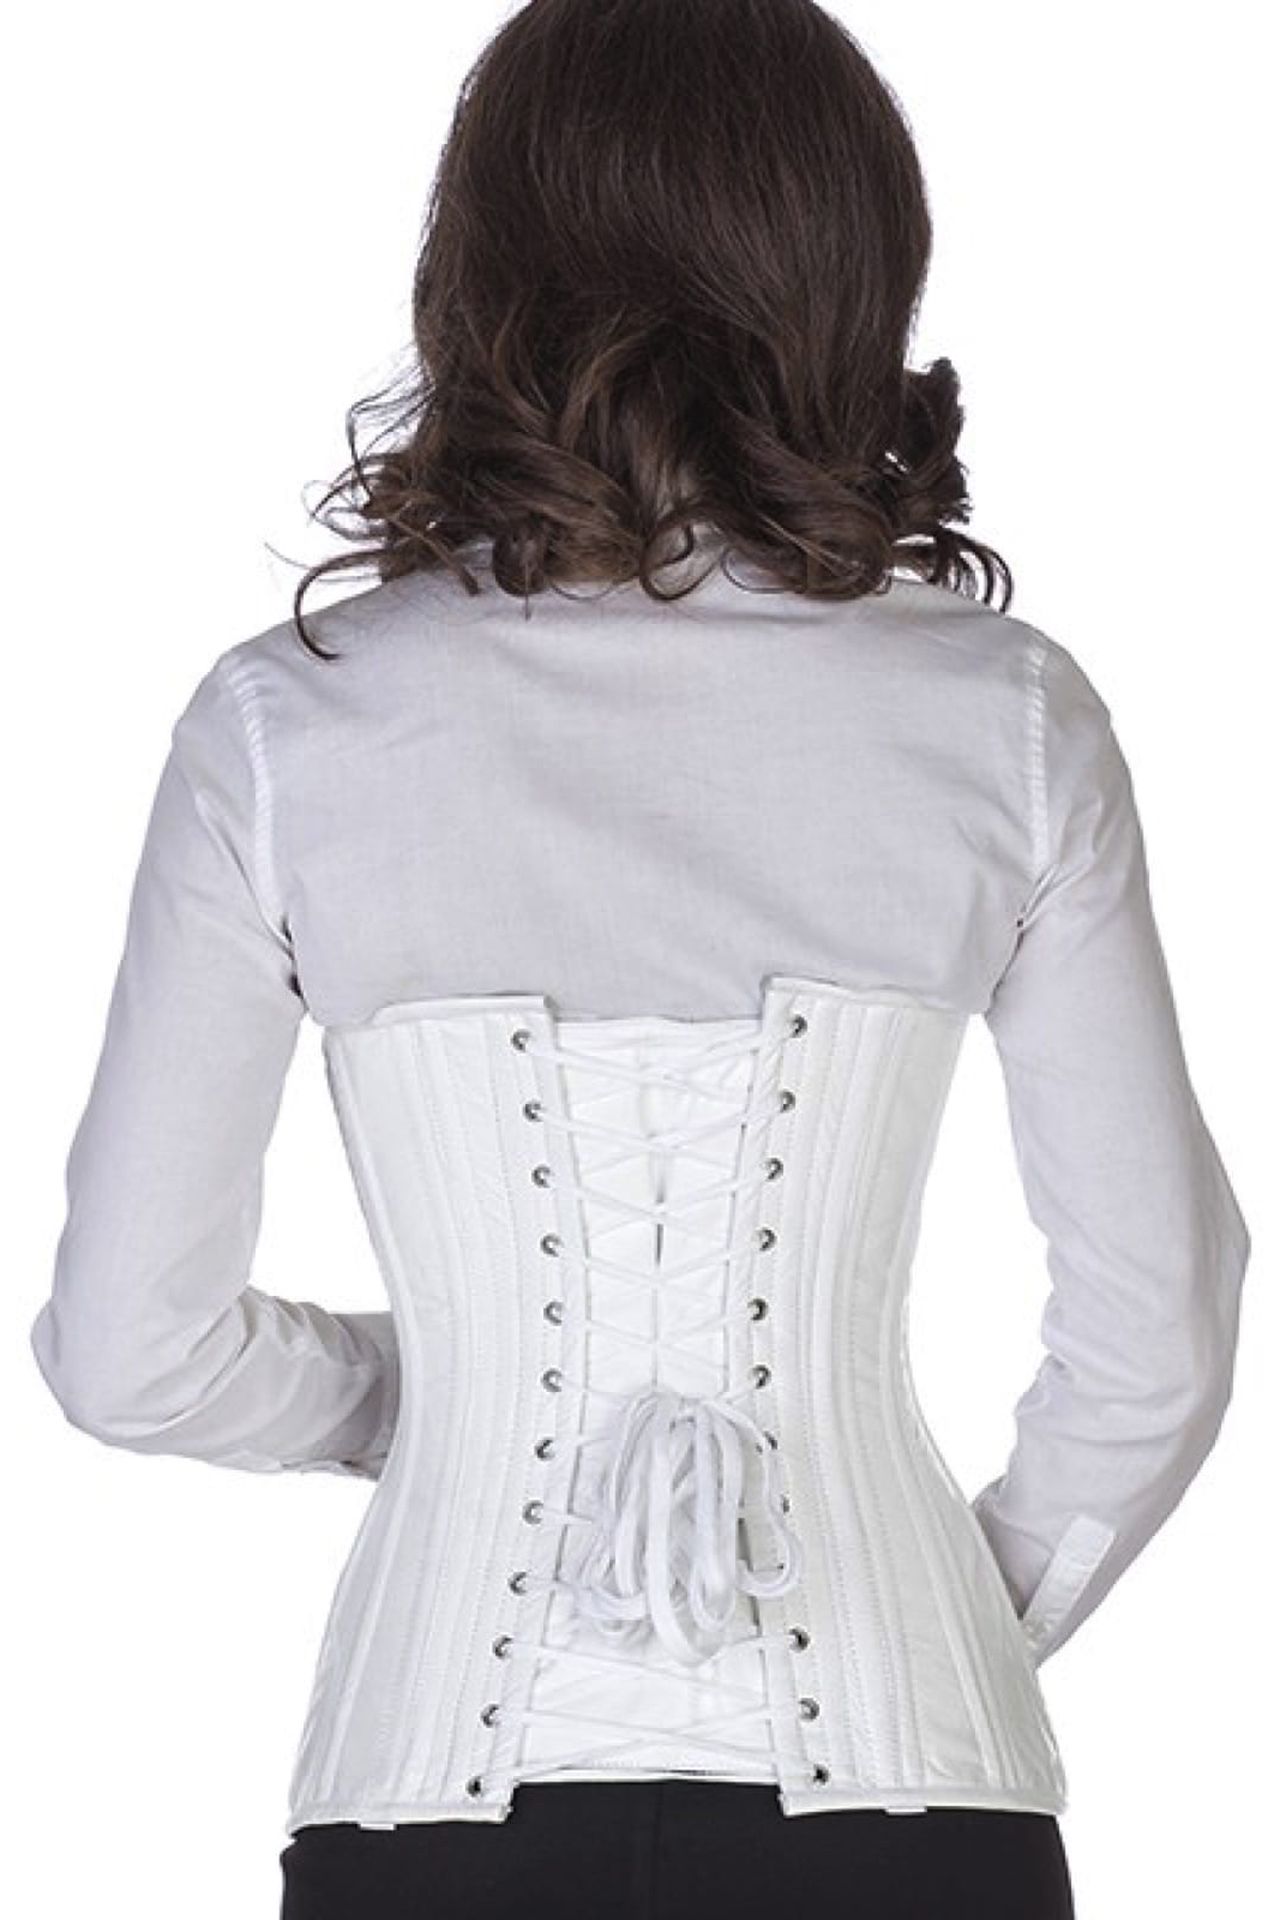 Leren corset wit onderborst rond gevormd Korset ln21